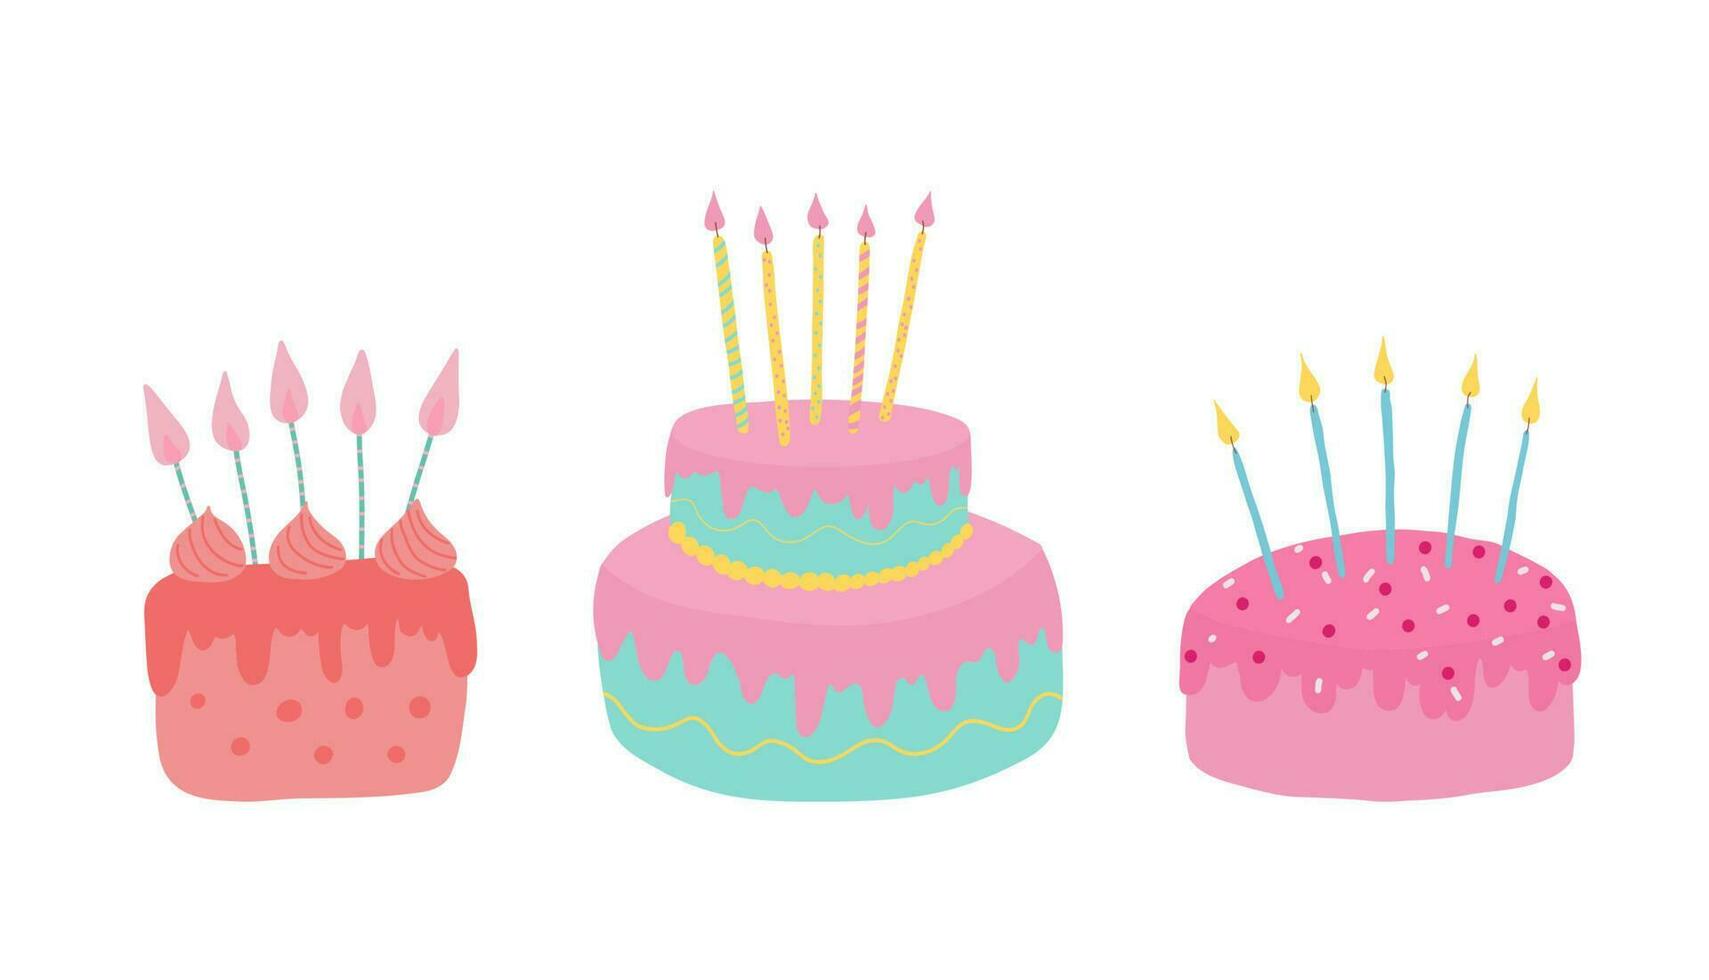 reeks van verjaardag cakes met kaarsen. verjaardag partij elementen. vector illustratie